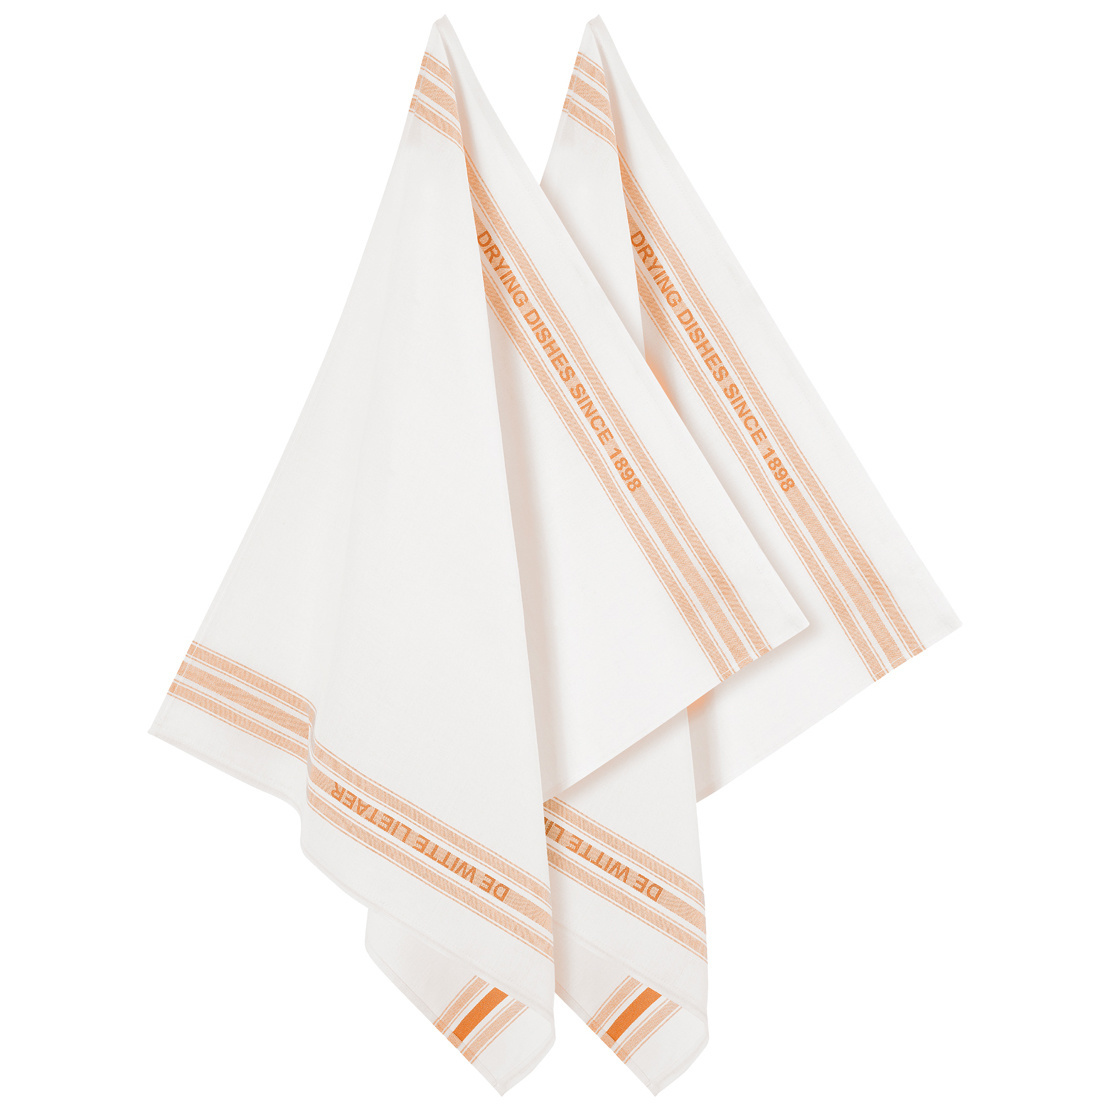 De Witte Lietaer Tea towel Dish, Orange - 2 pieces - 65 x 70 cm - Cotton/Linen